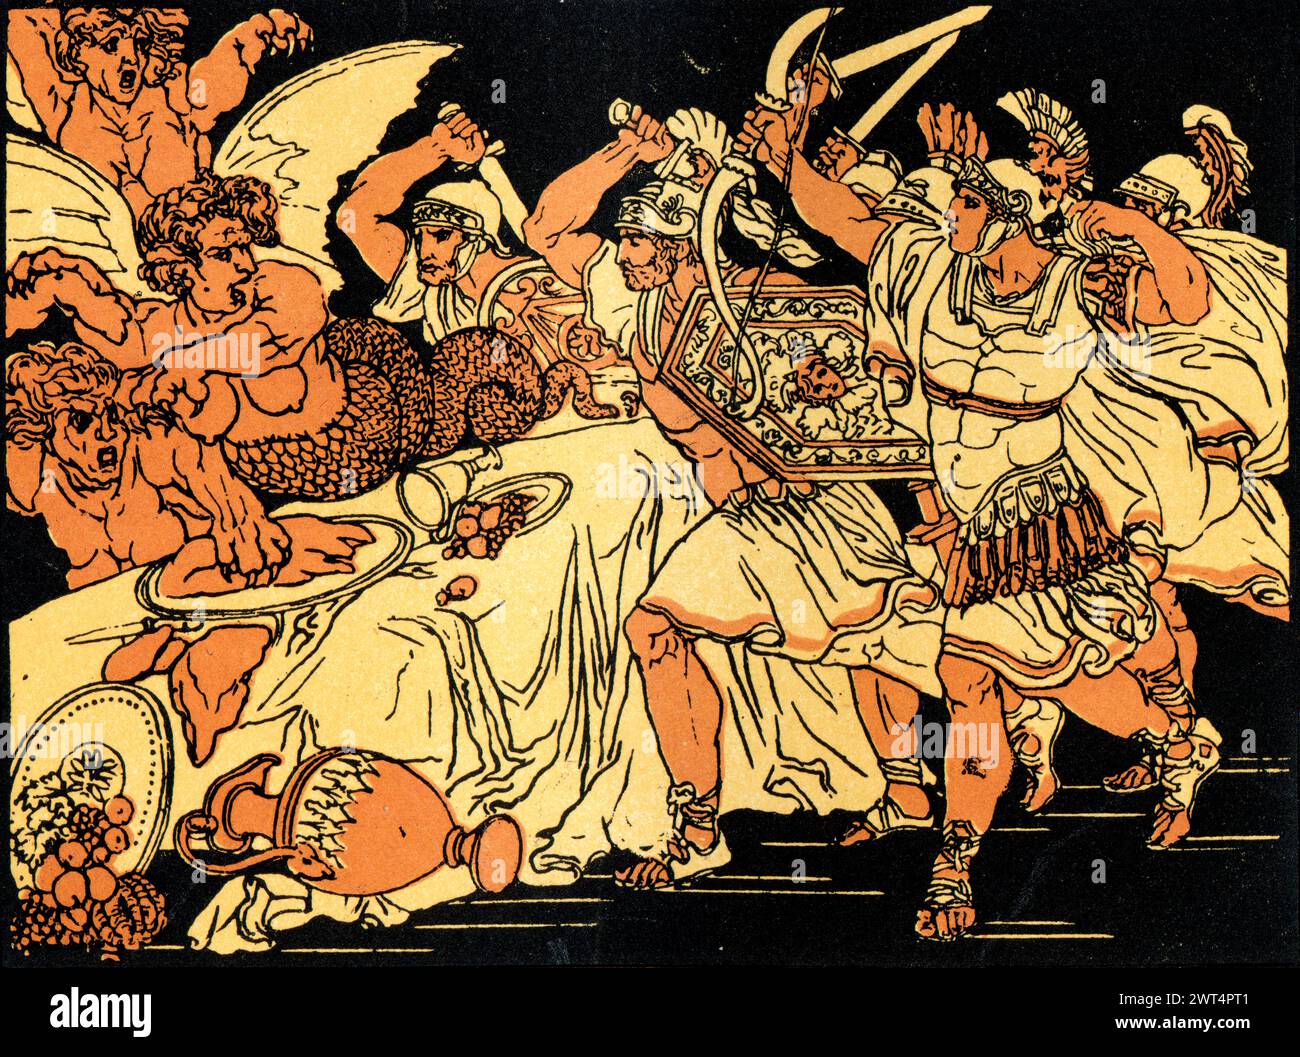 Illustration vintage mythologie romaine, bataille avec harpies, Énée un poème épique latin qui raconte l'histoire légendaire d'Énée, un cheval de Troie qui a fui la fa Banque D'Images